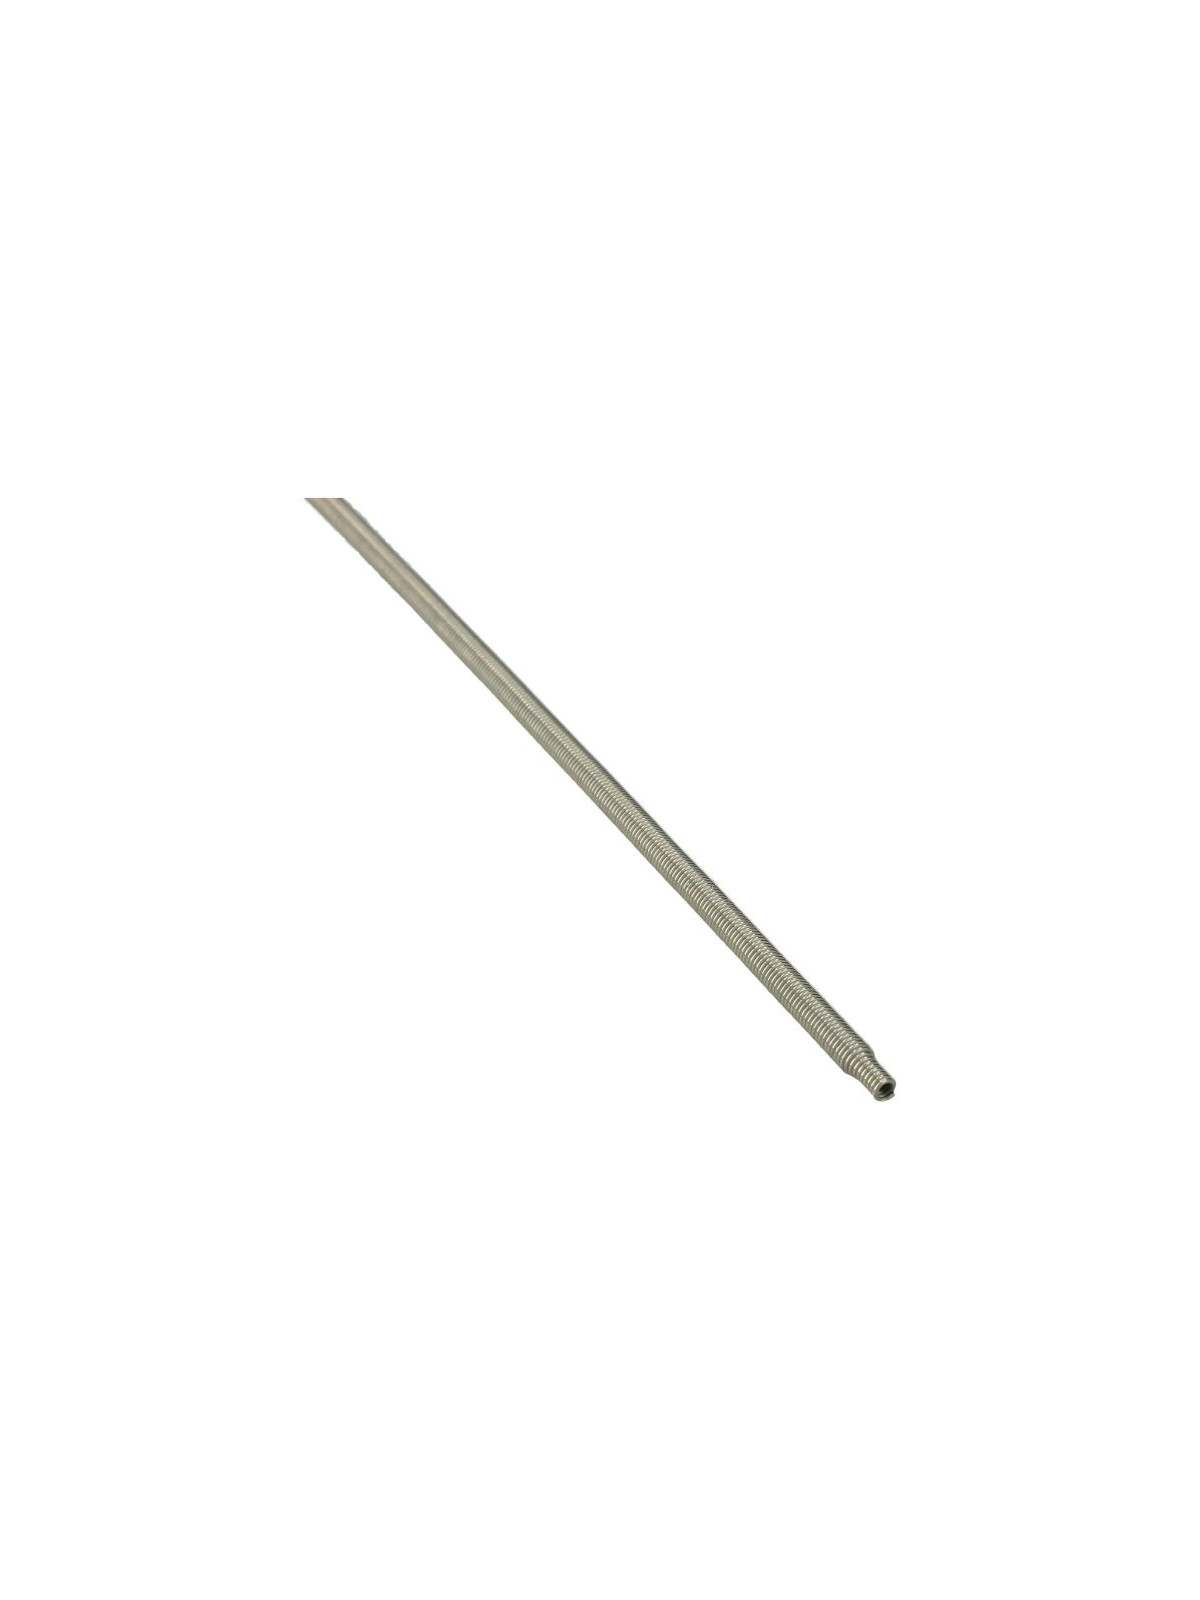 Collier de serrage joint de hublot universel Ø800mm - Lave linge